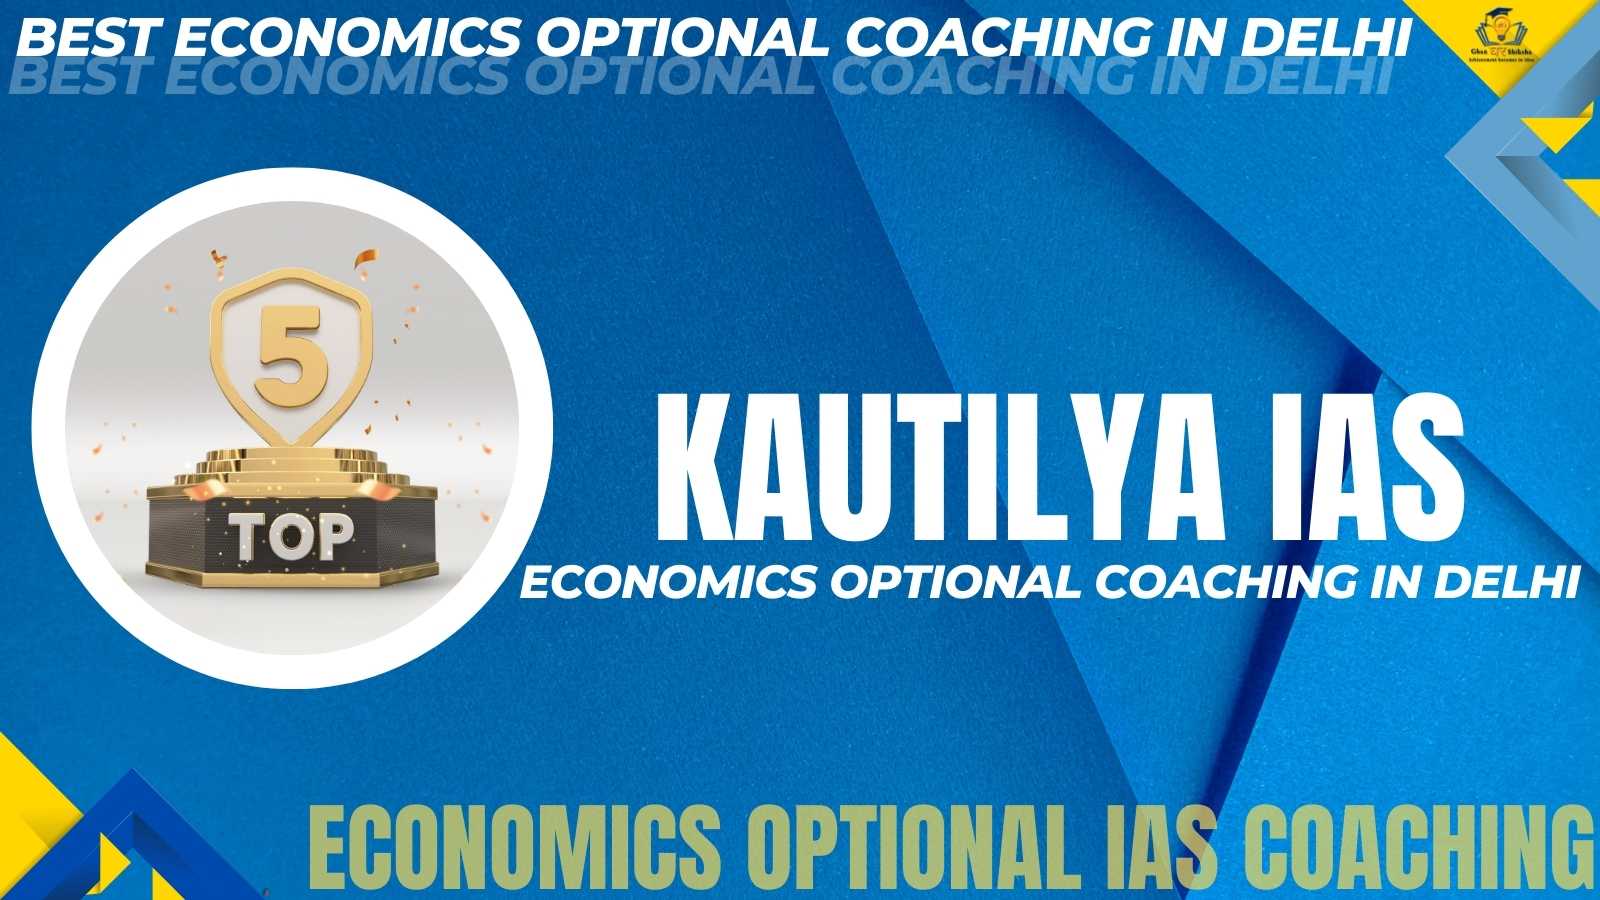 Economics Optional Coaching Institute In Delhi